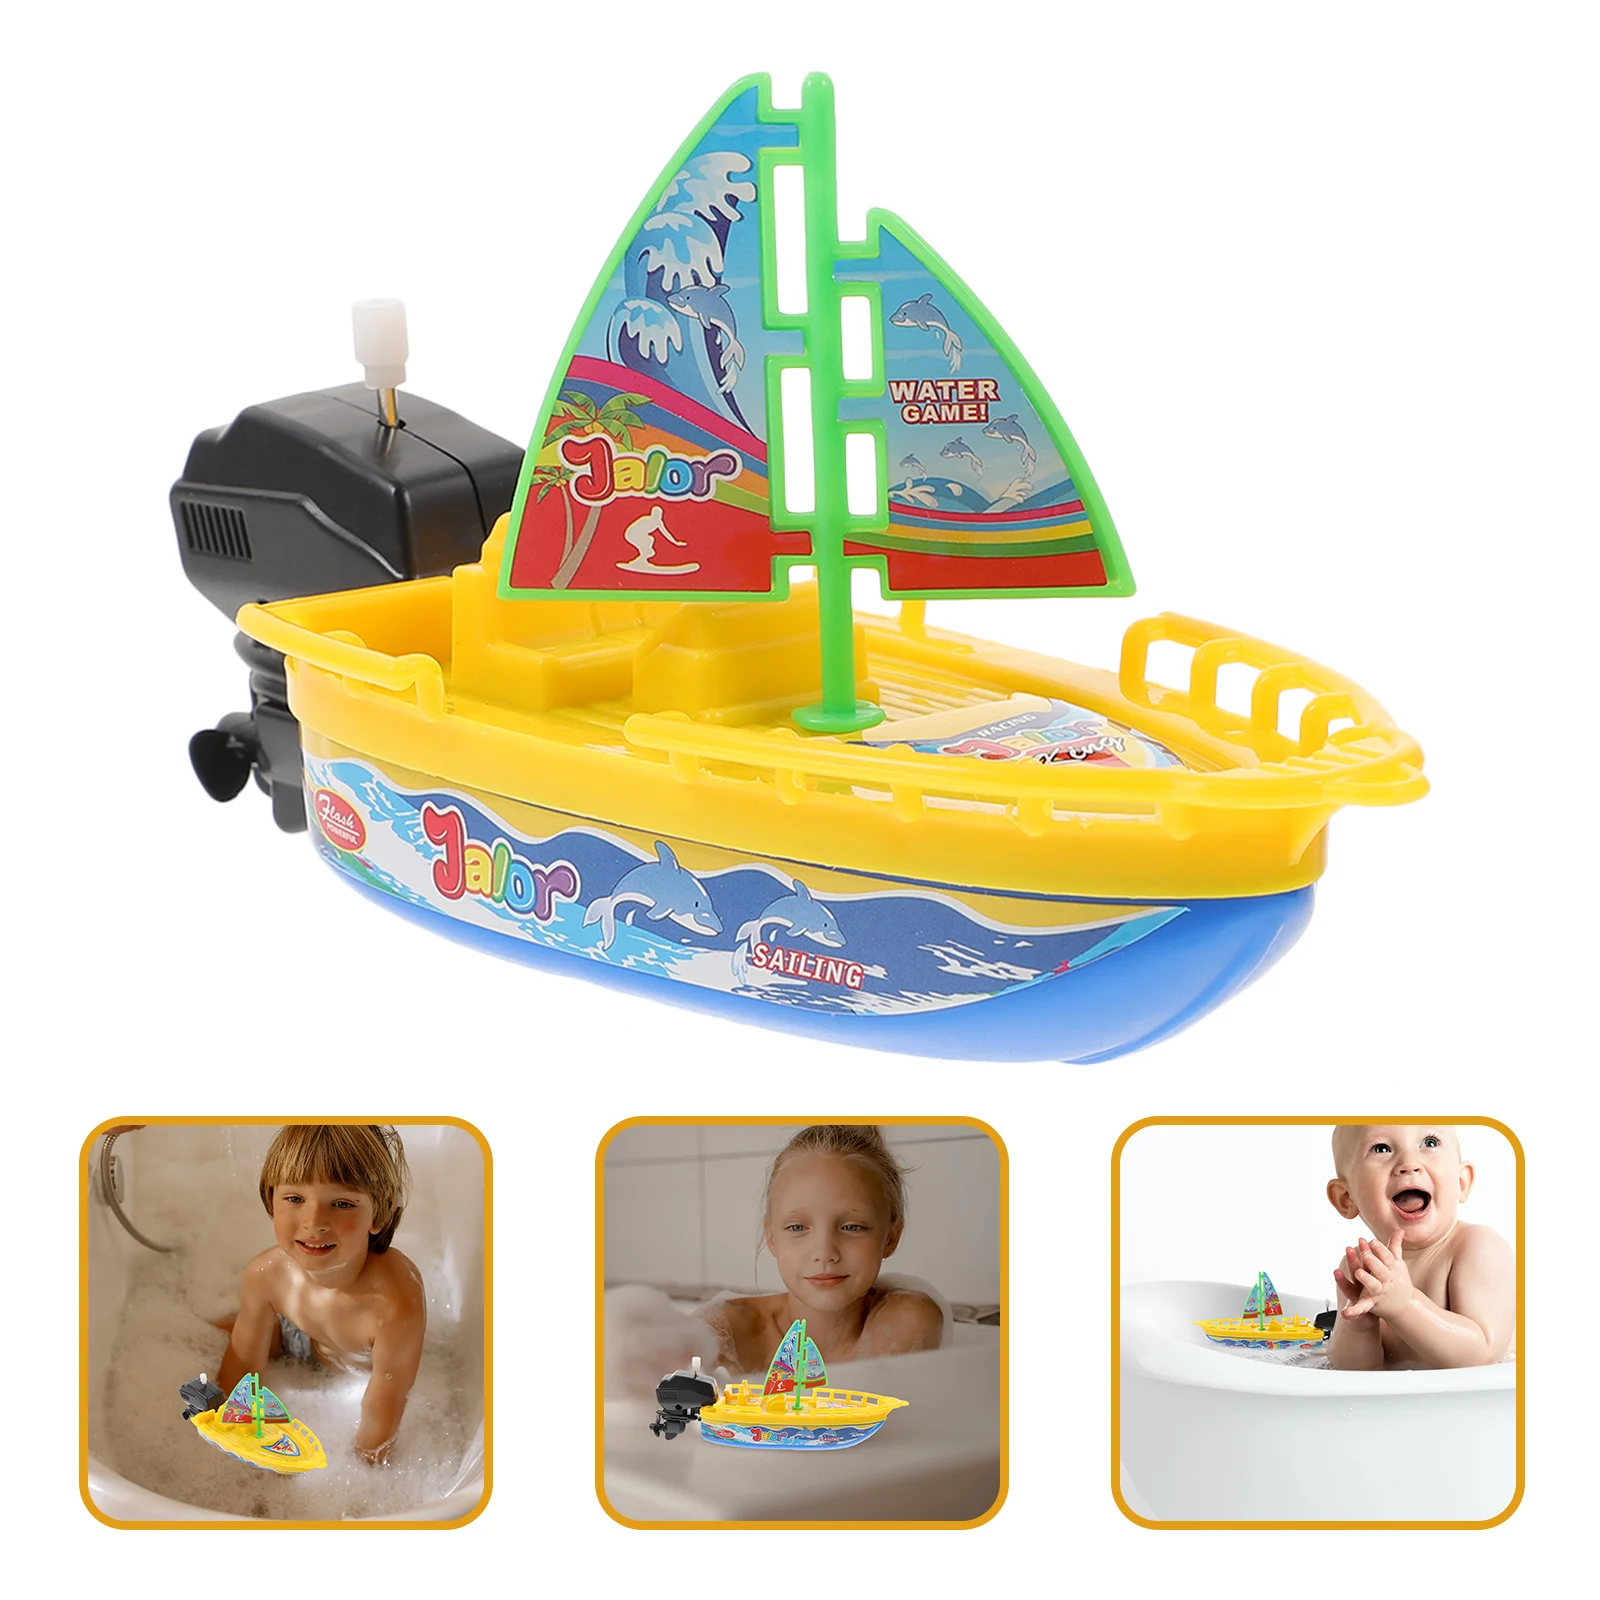 

3 шт. заводная игрушечная лодка, Игрушки для ванны, заводная парусная лодка, водный душ, плавающие пластиковые детские лодки для игр